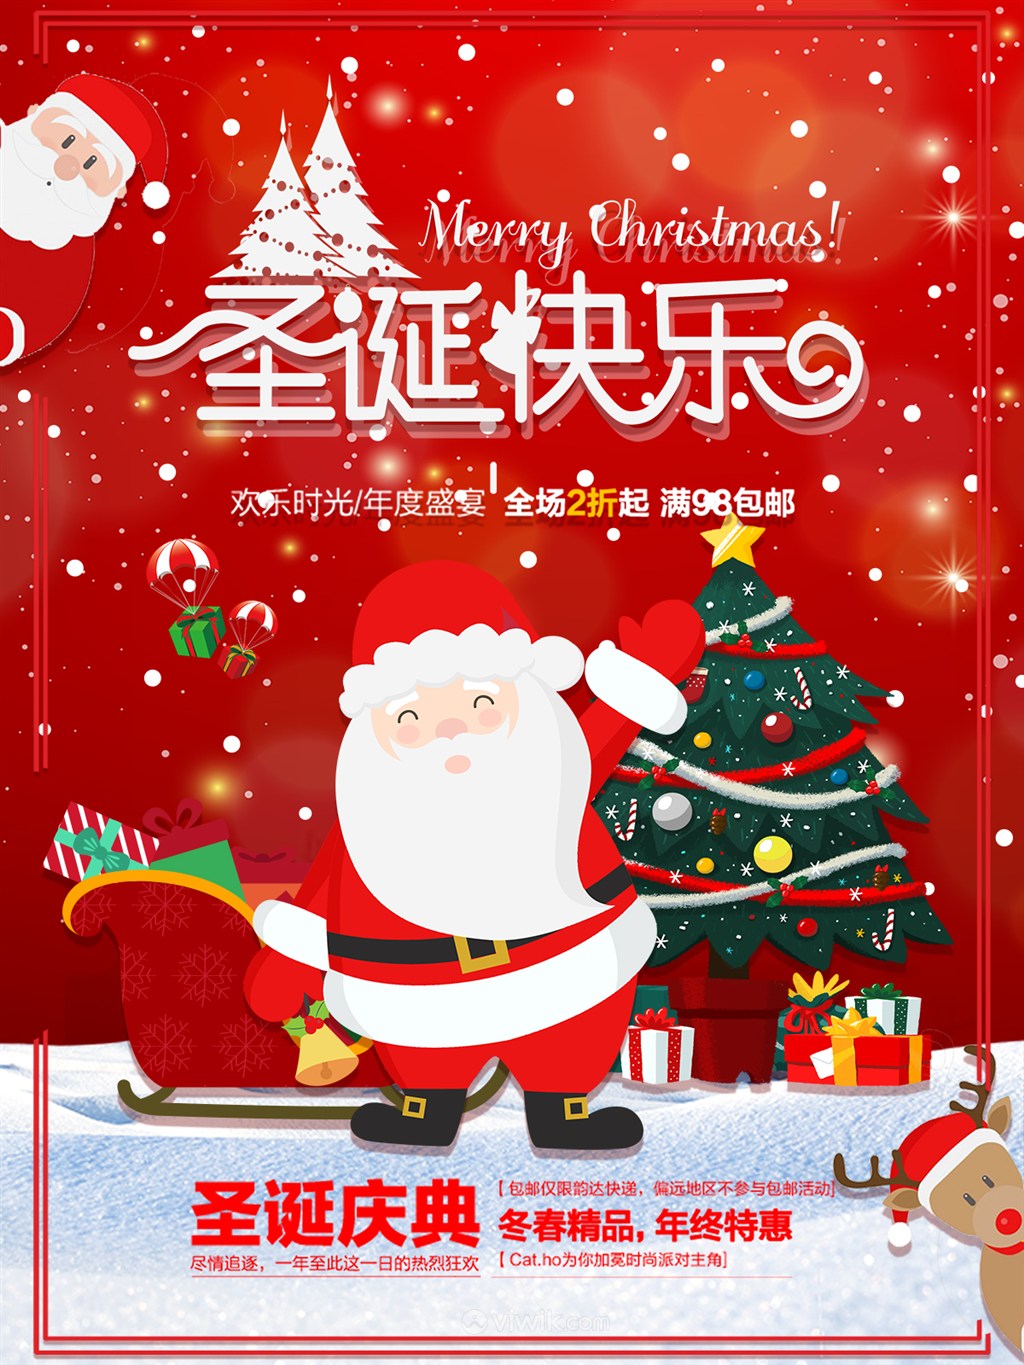 圣诞快乐红色卡通扁平化圣诞节宣传海报